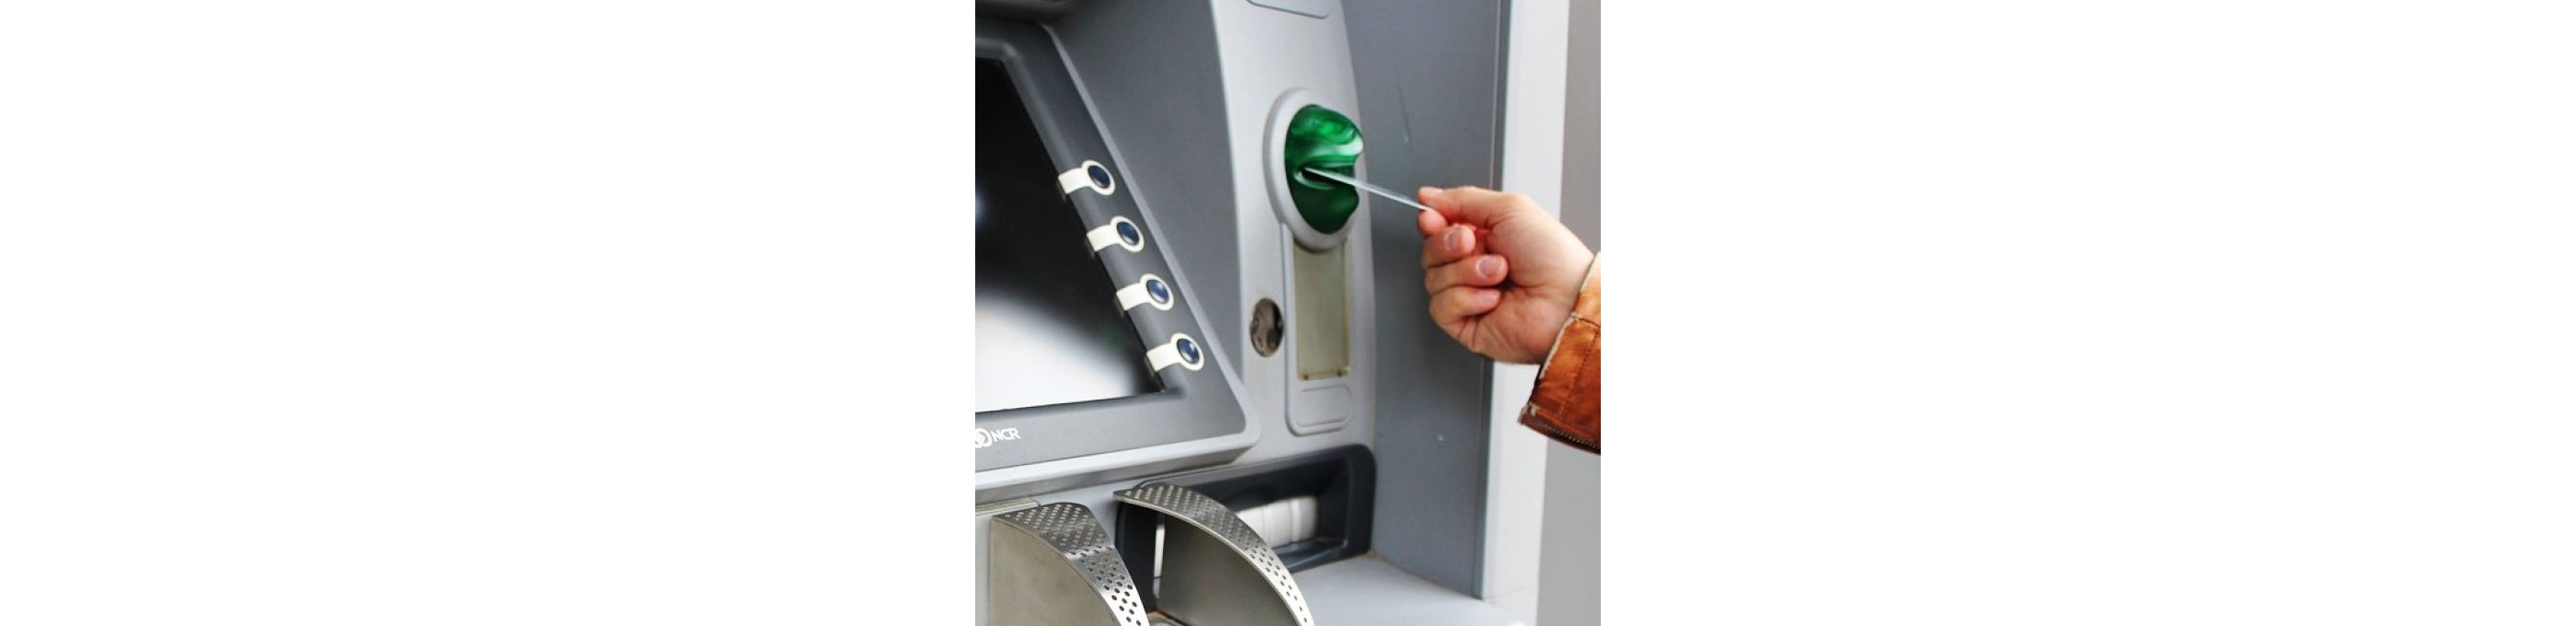 От Федеральной антимонопольной комиссии поступило предложение отменить комиссию при снятии денег во всех банкоматах